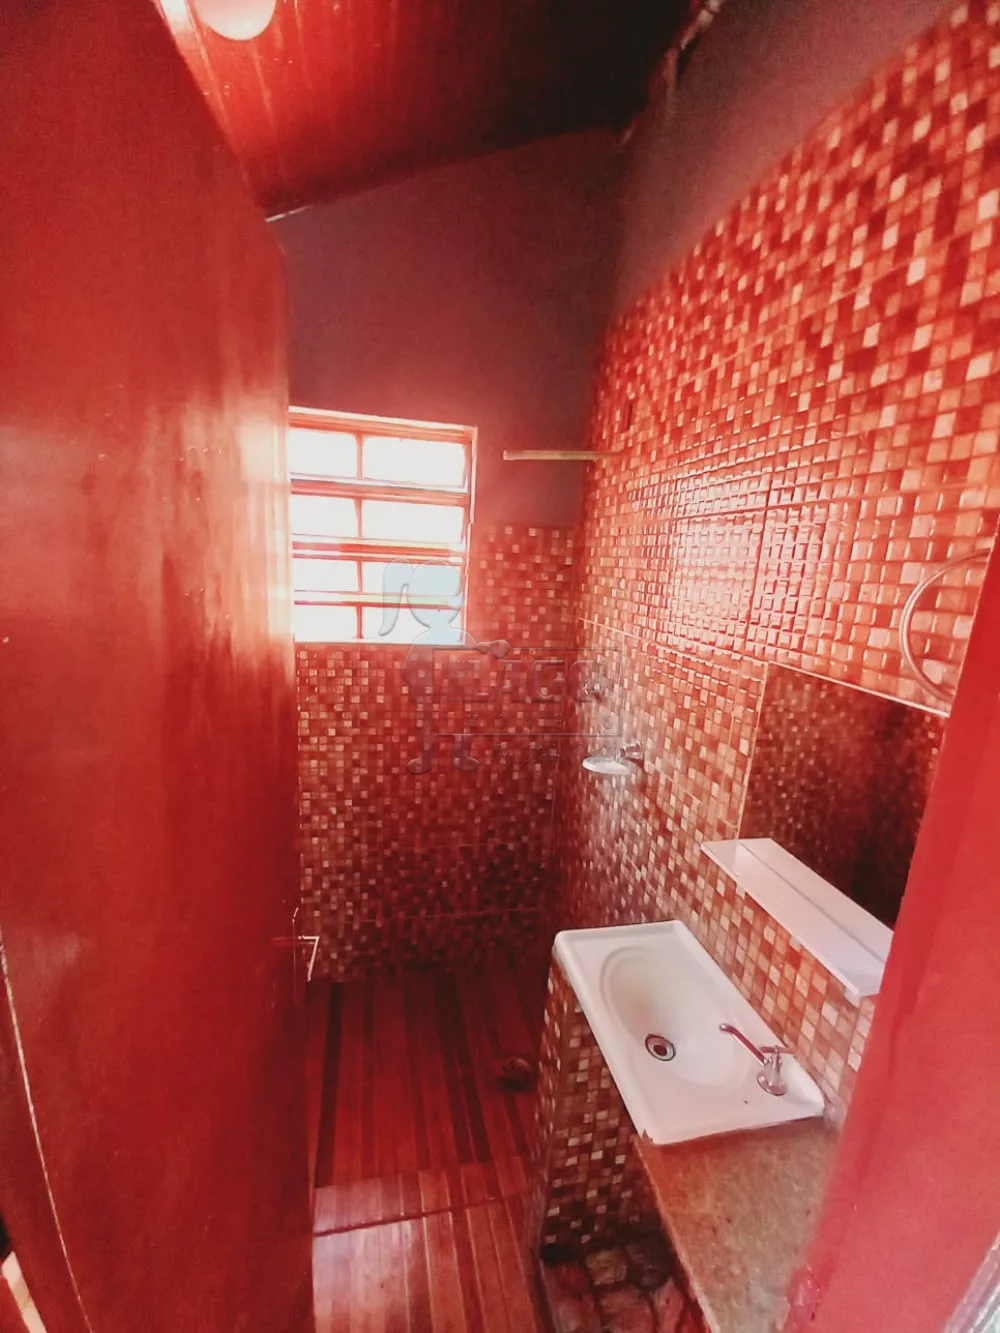 Alugar Casa / Padrão em Ribeirão Preto R$ 950,00 - Foto 14